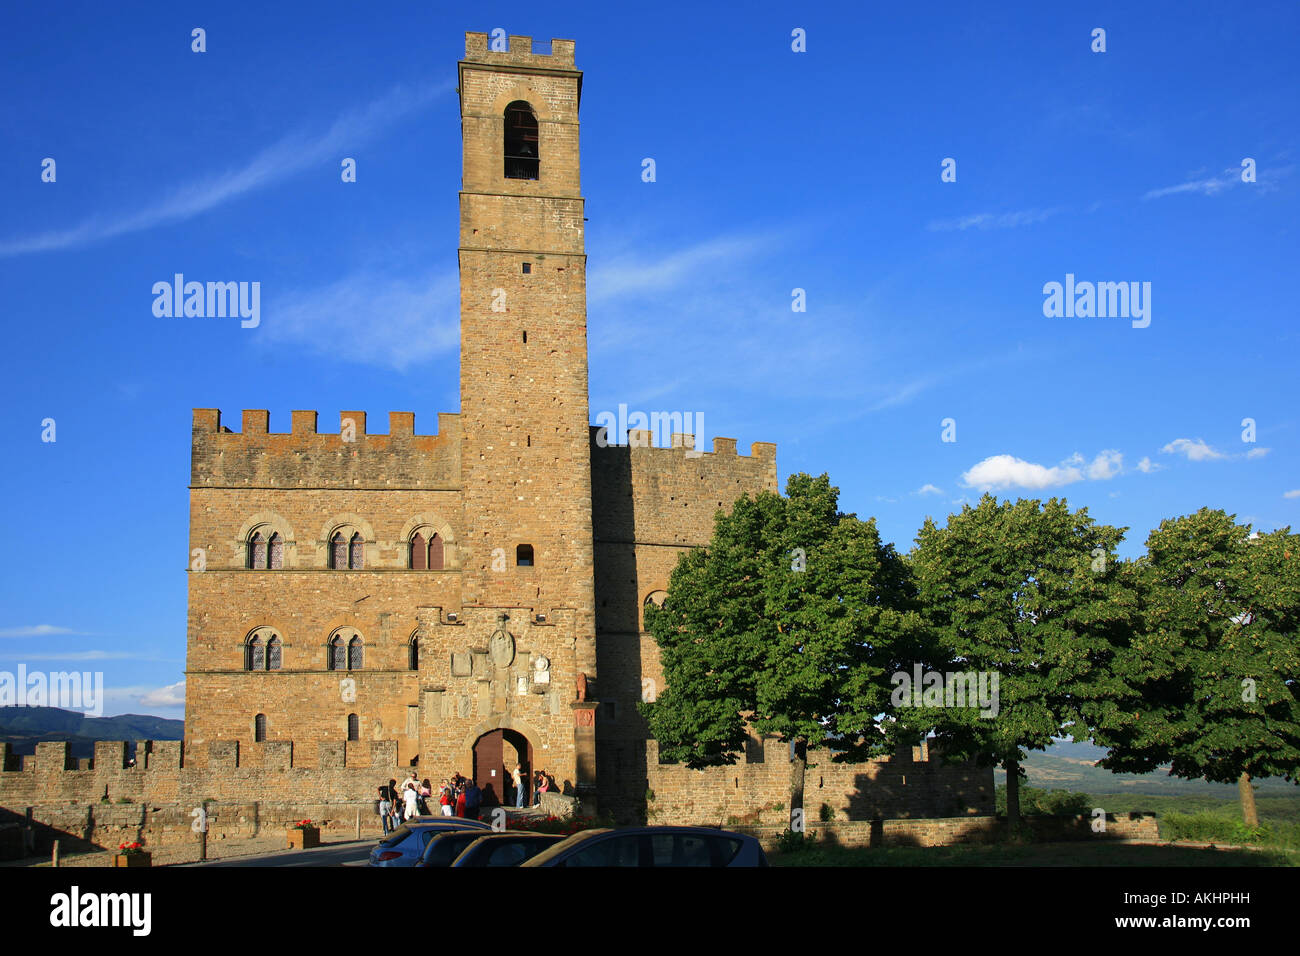 Conti Guidi castle, Poppi, Tuscany, Italy Stock Photo